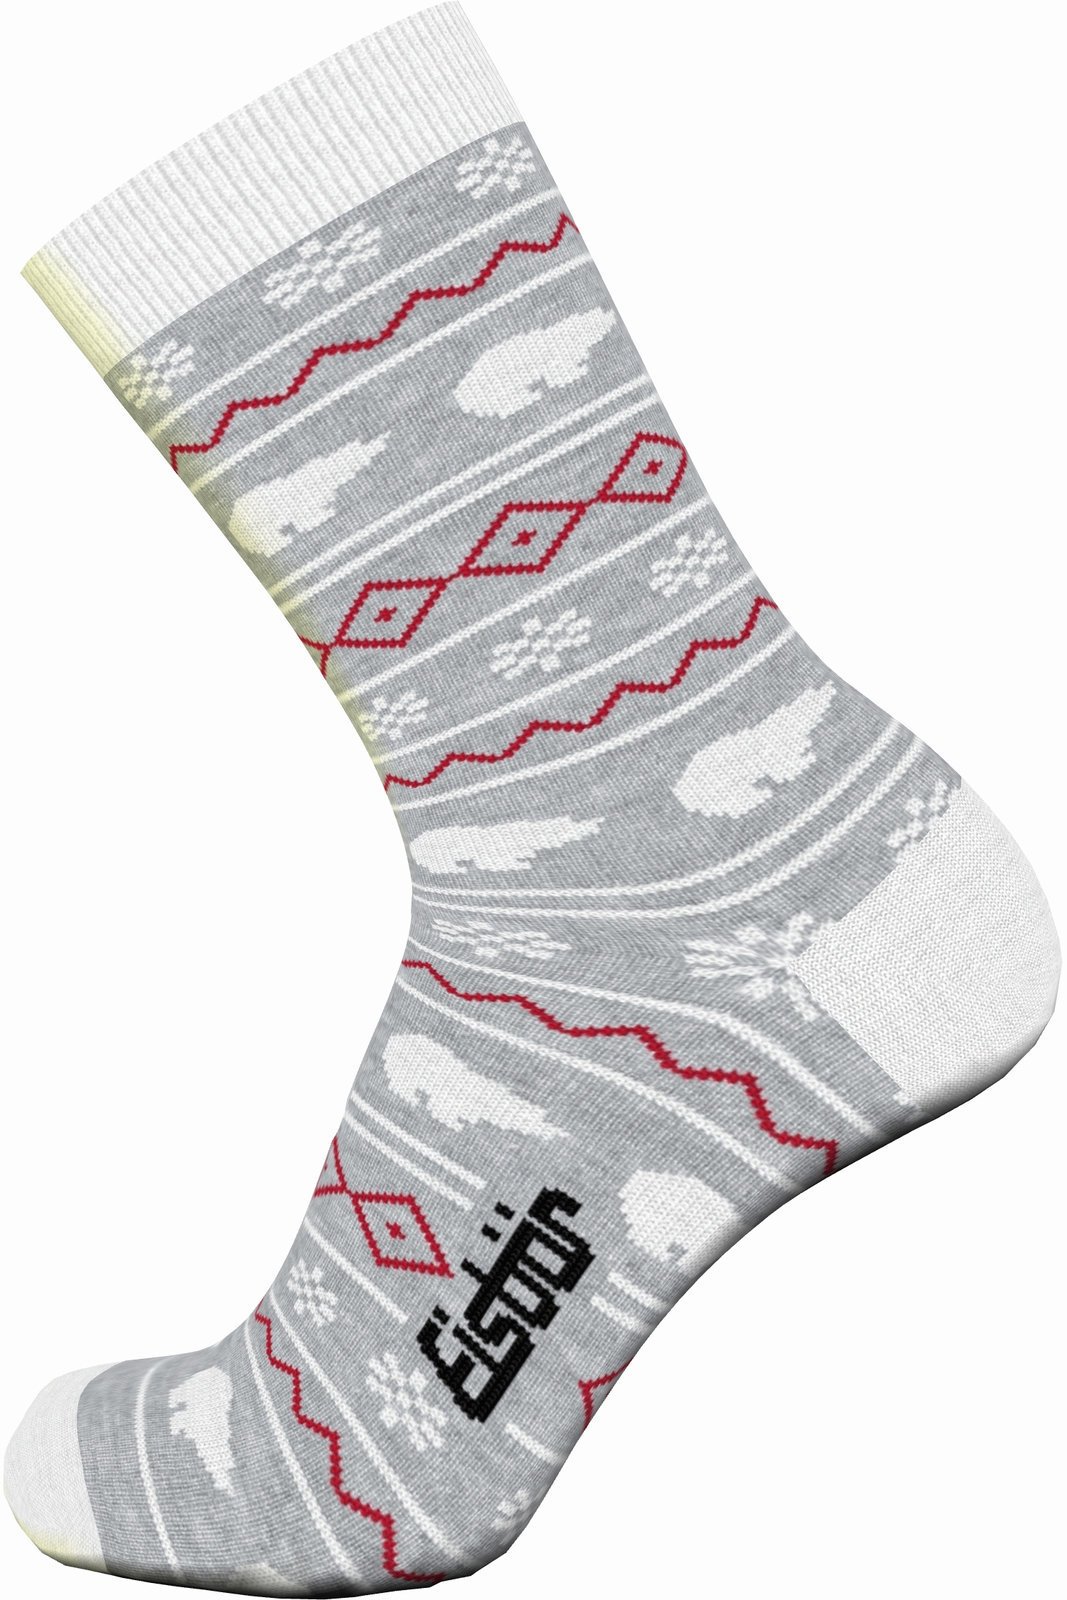 Ski-sokken Eisbär Lifestyle Jacquard Red-Grey 23-26 Ski-sokken (Alleen uitgepakt)